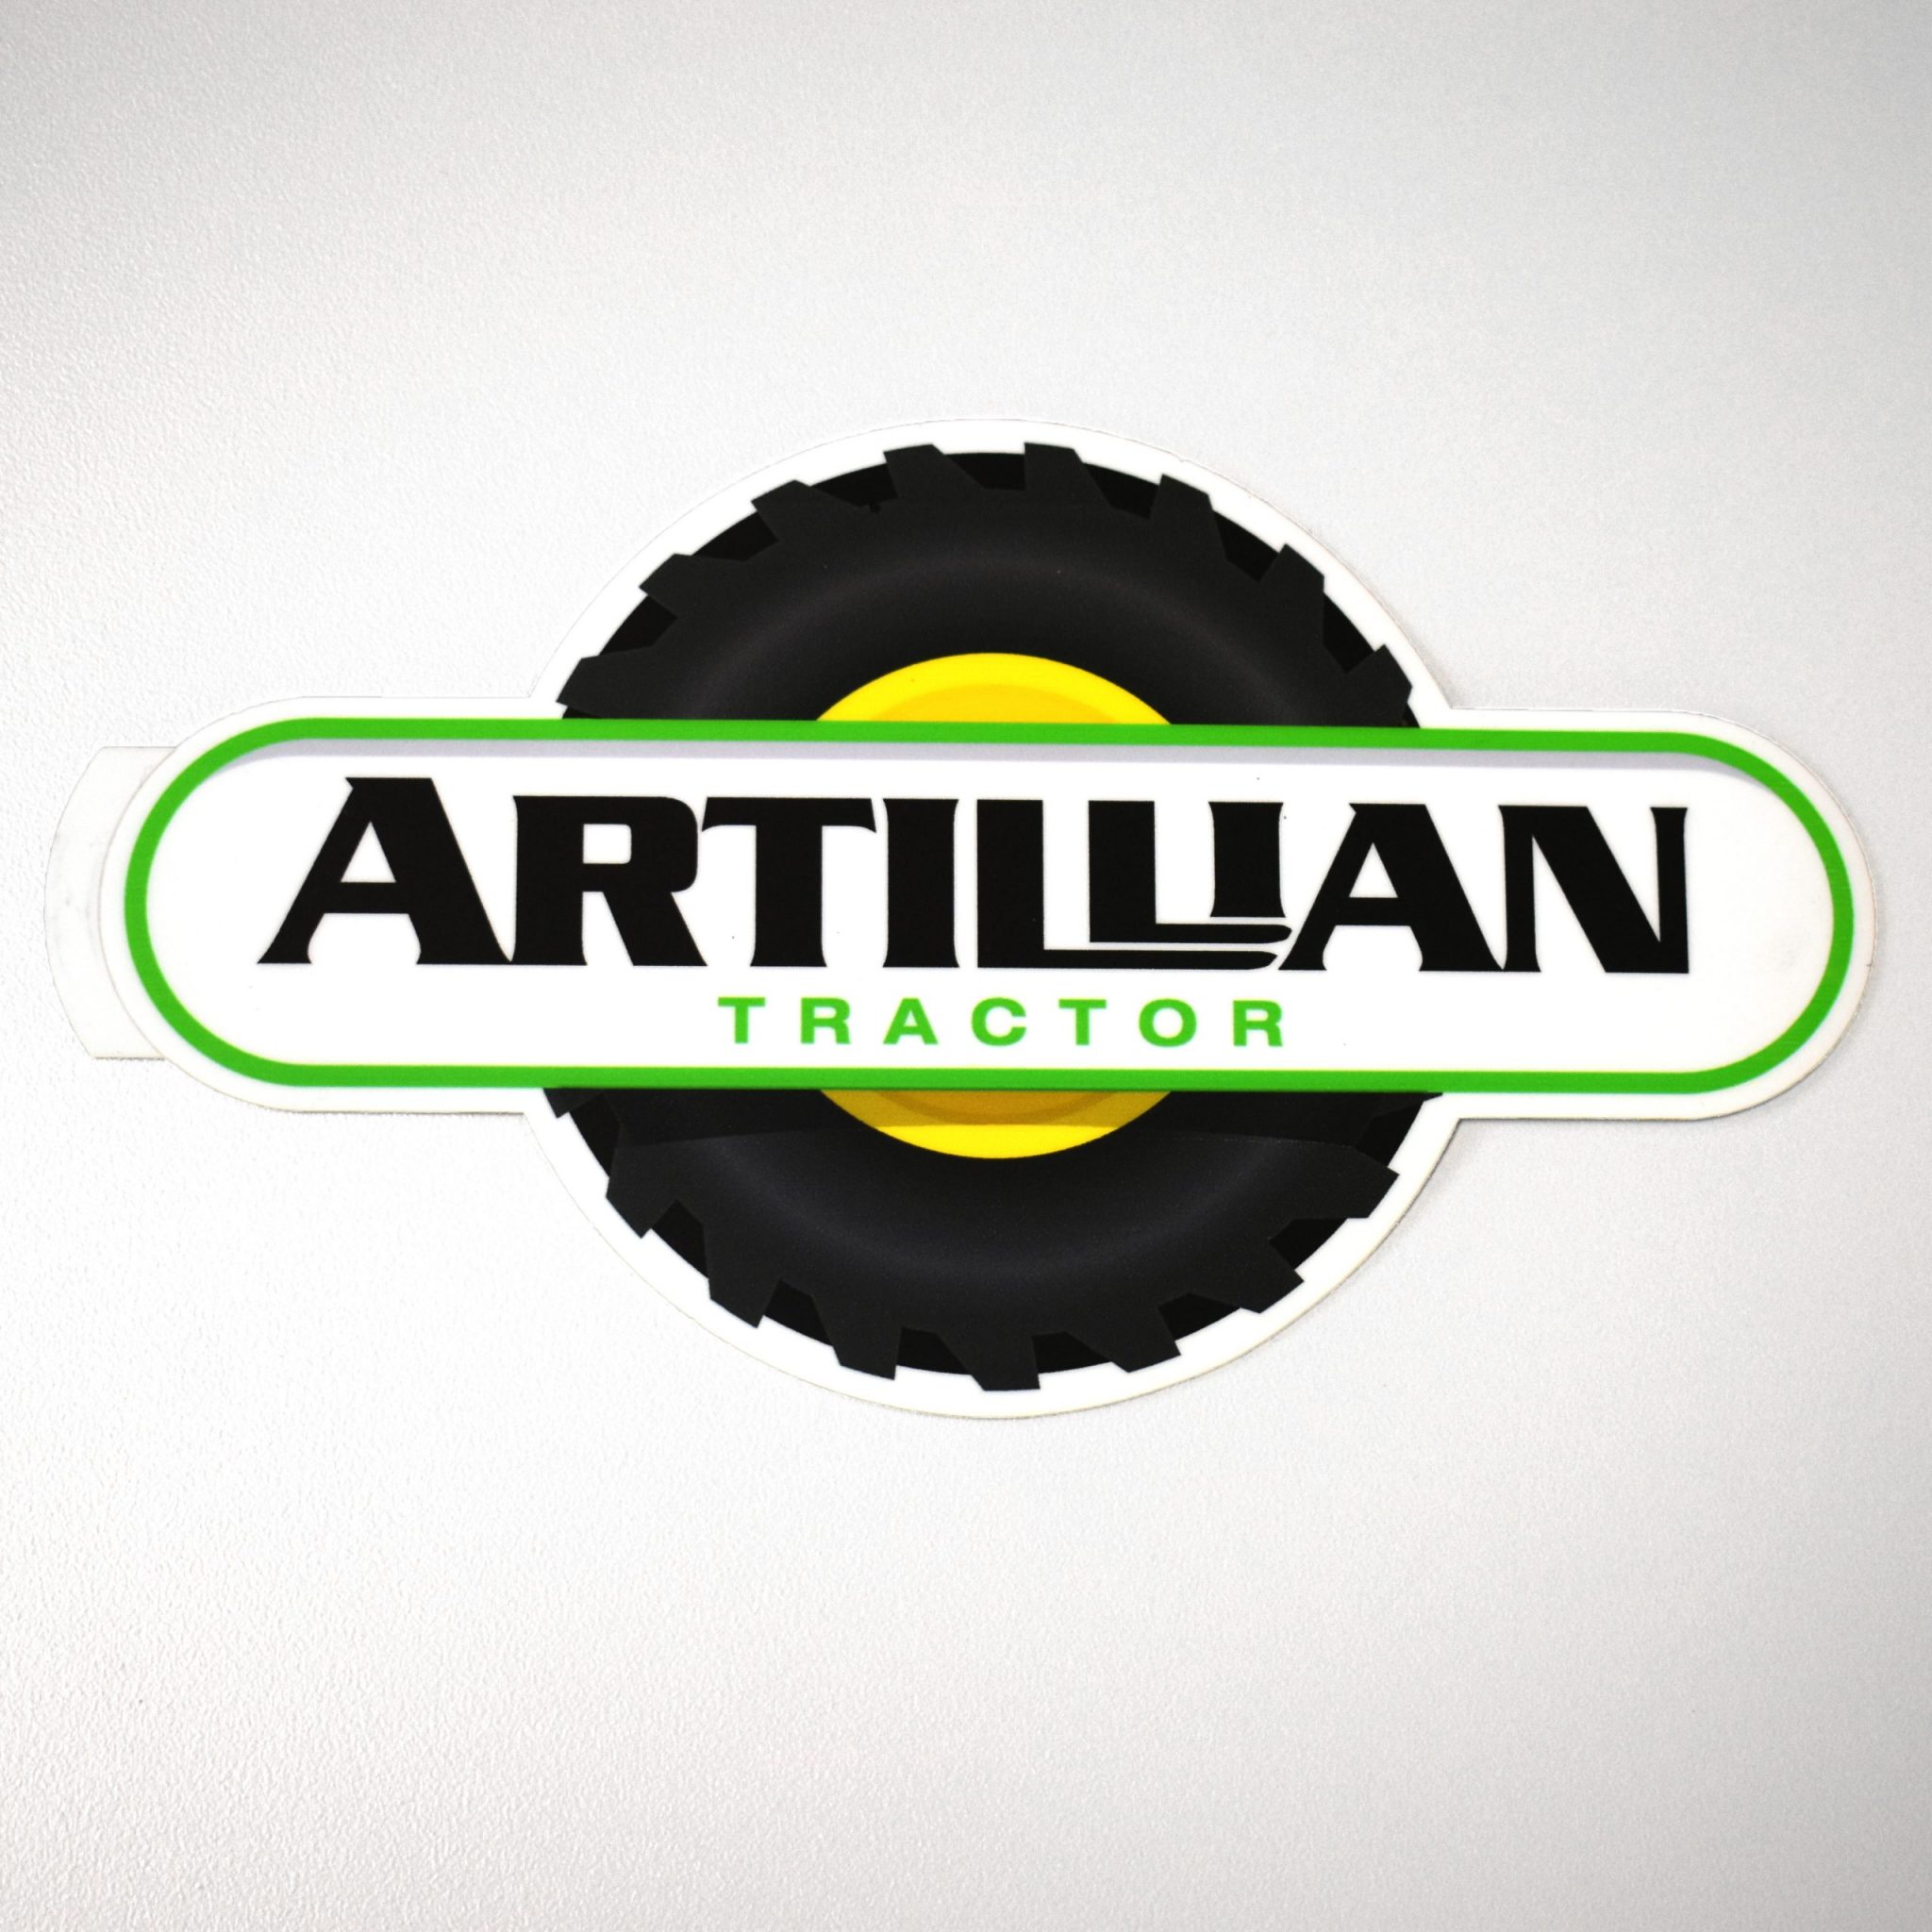 www.artillian.com